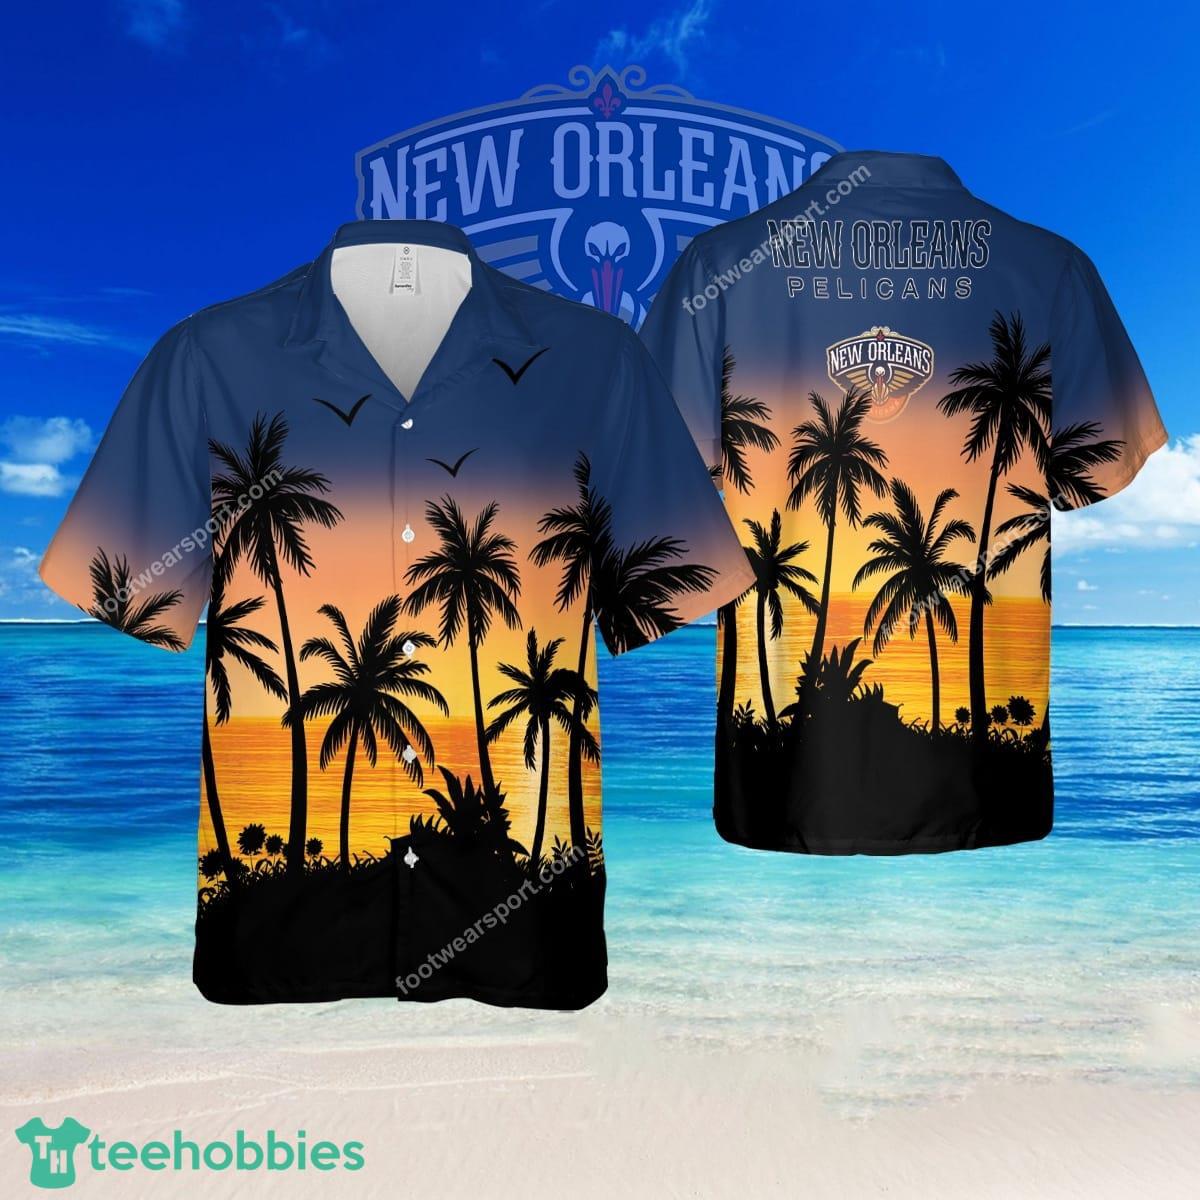 NBA New Orleans Pelicans Plus Size Brand AOP Hawaiian Shirt For Summer - NBA New Orleans Pelicans Plus Size Brand AOP Hawaiian Shirt For Summer